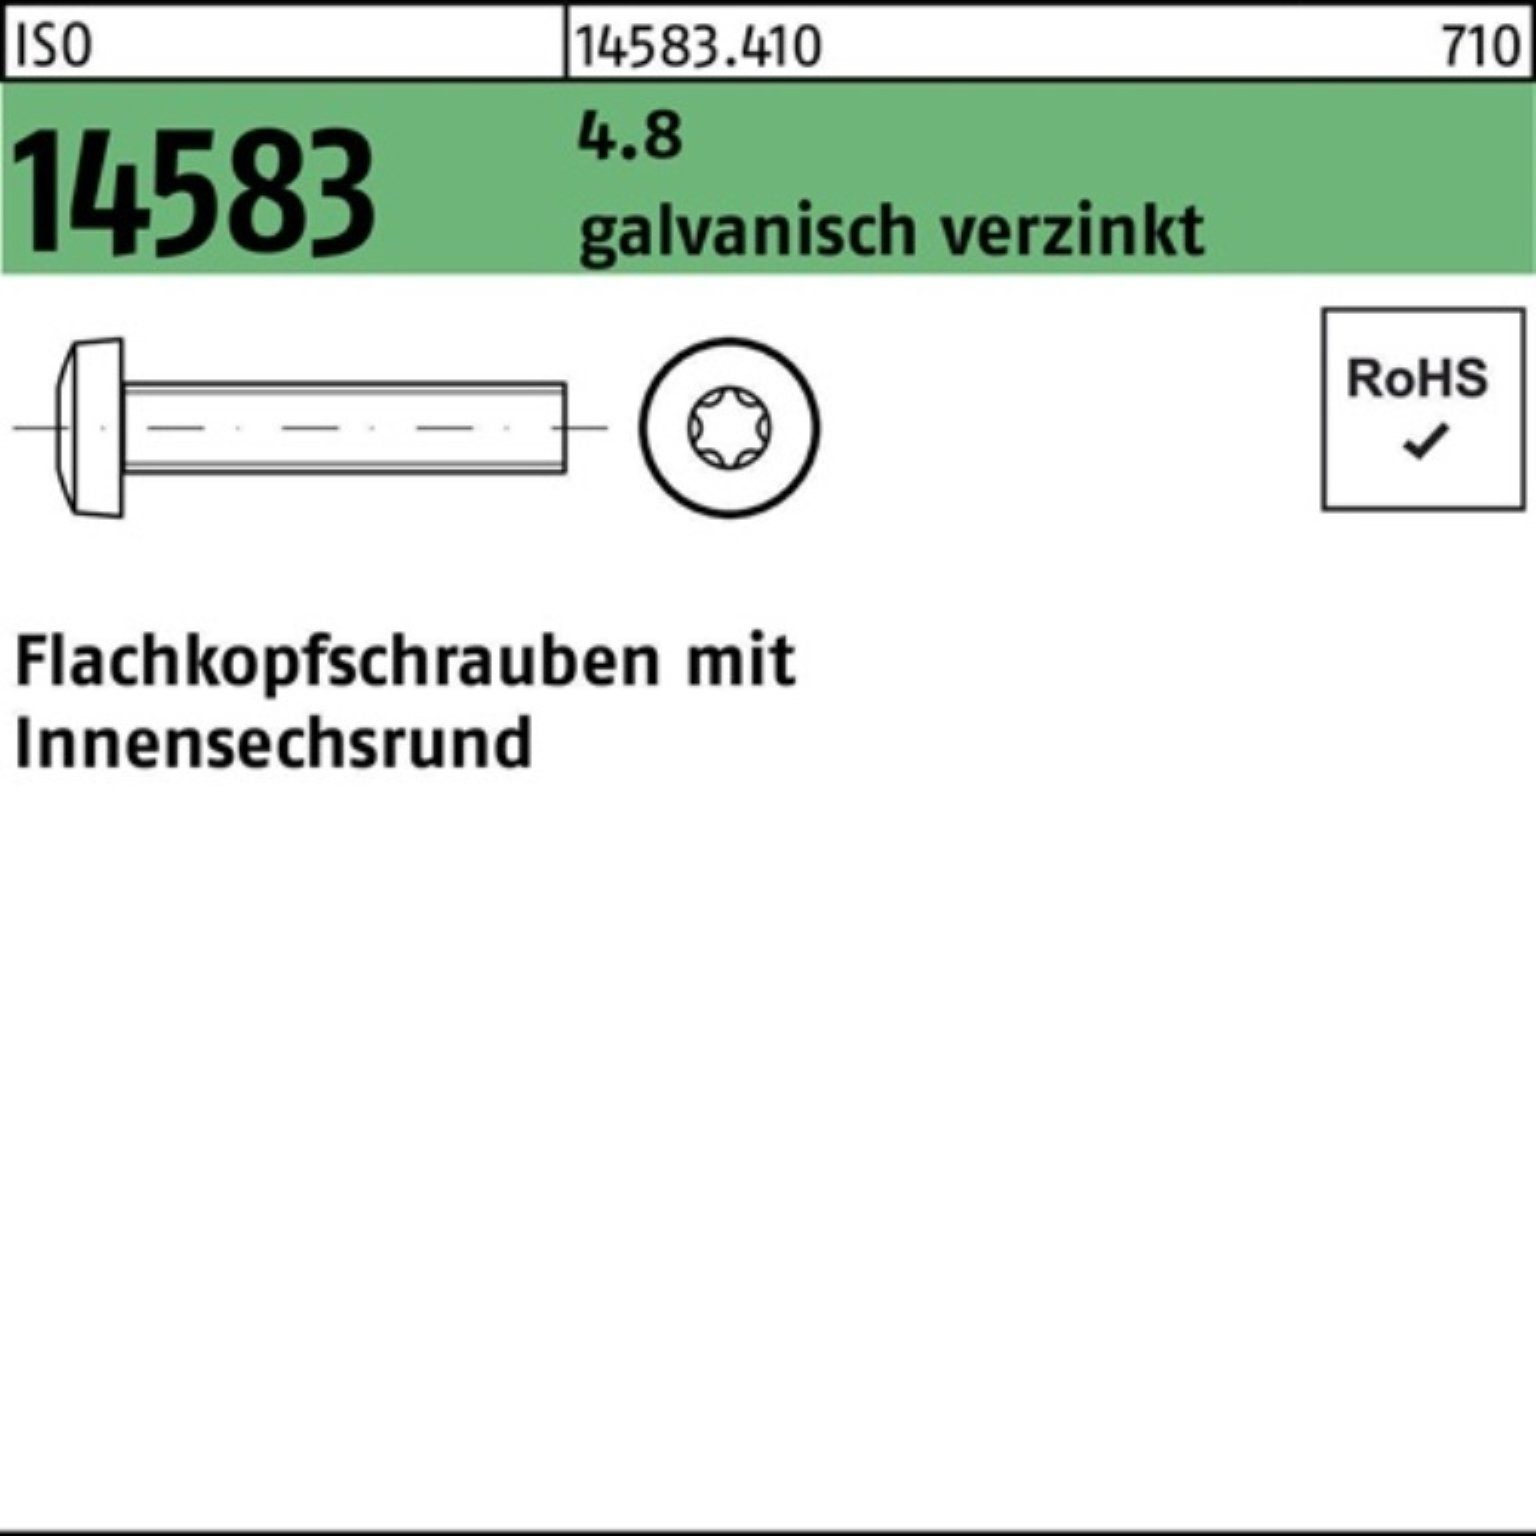 200St. Reyher 4.8 200er ISR Flachkopfschraube ISO galv.verz. 14583 Schraube M5x16 Pack